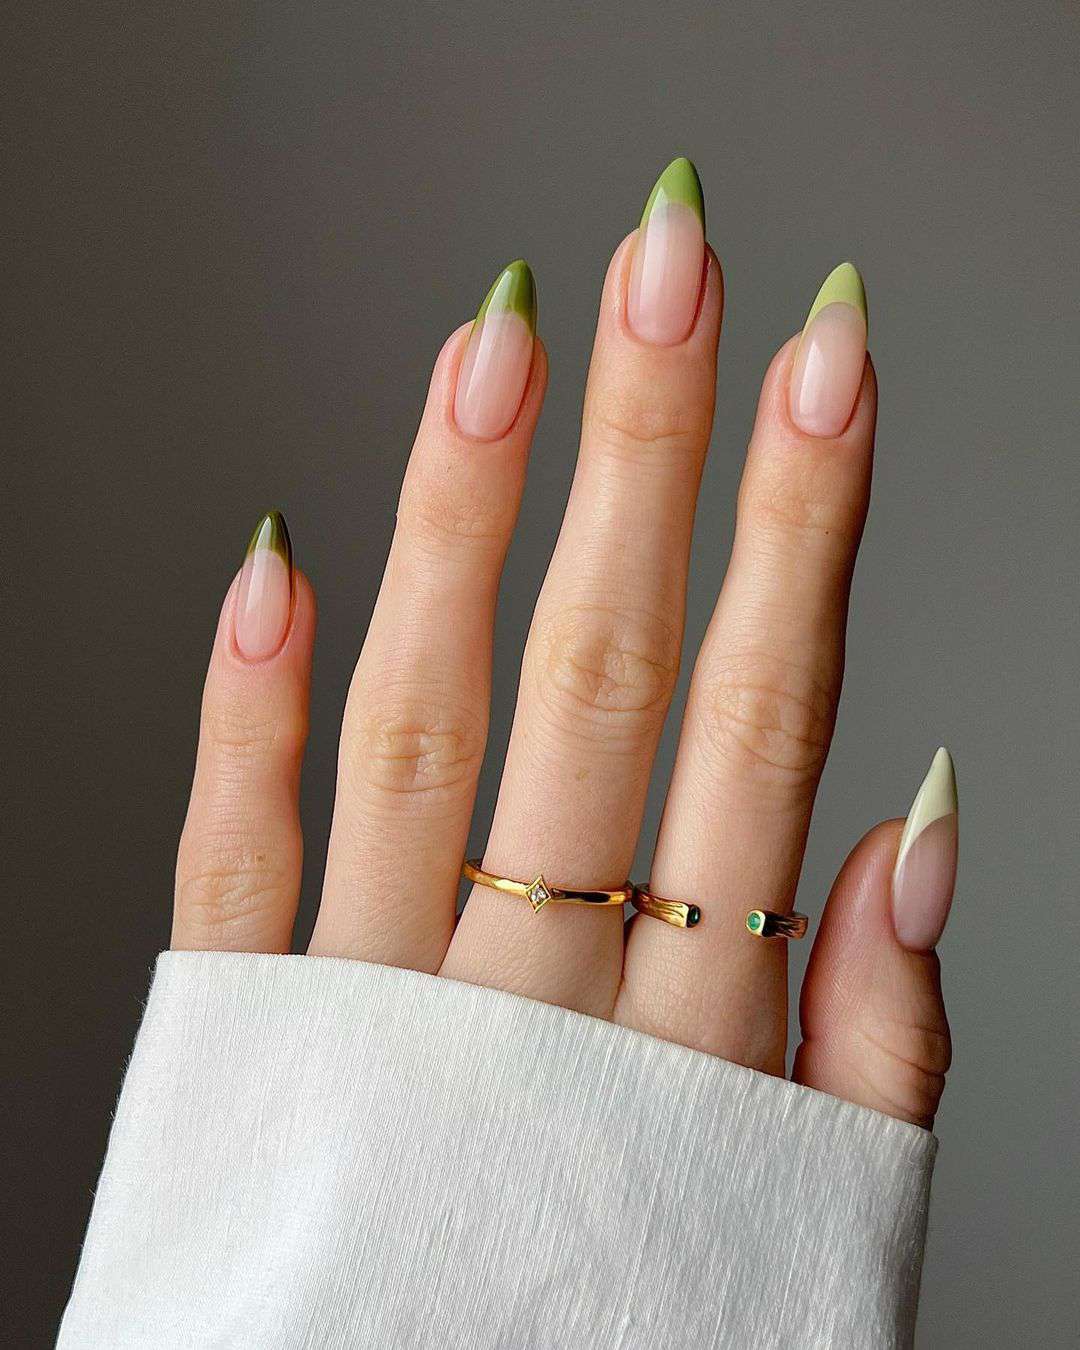 Manicure francesa com pontas verdes gradientes